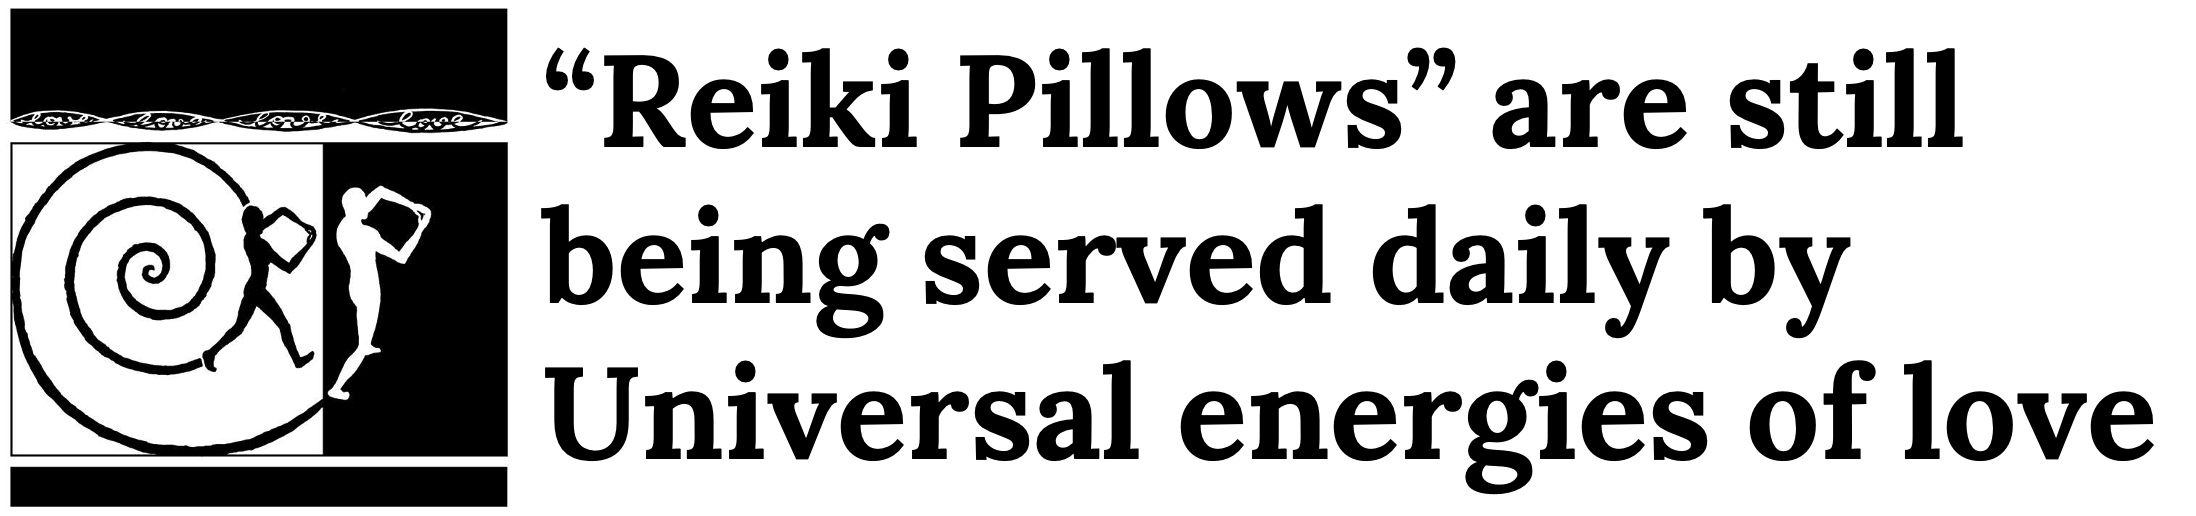 Reiki Pillows